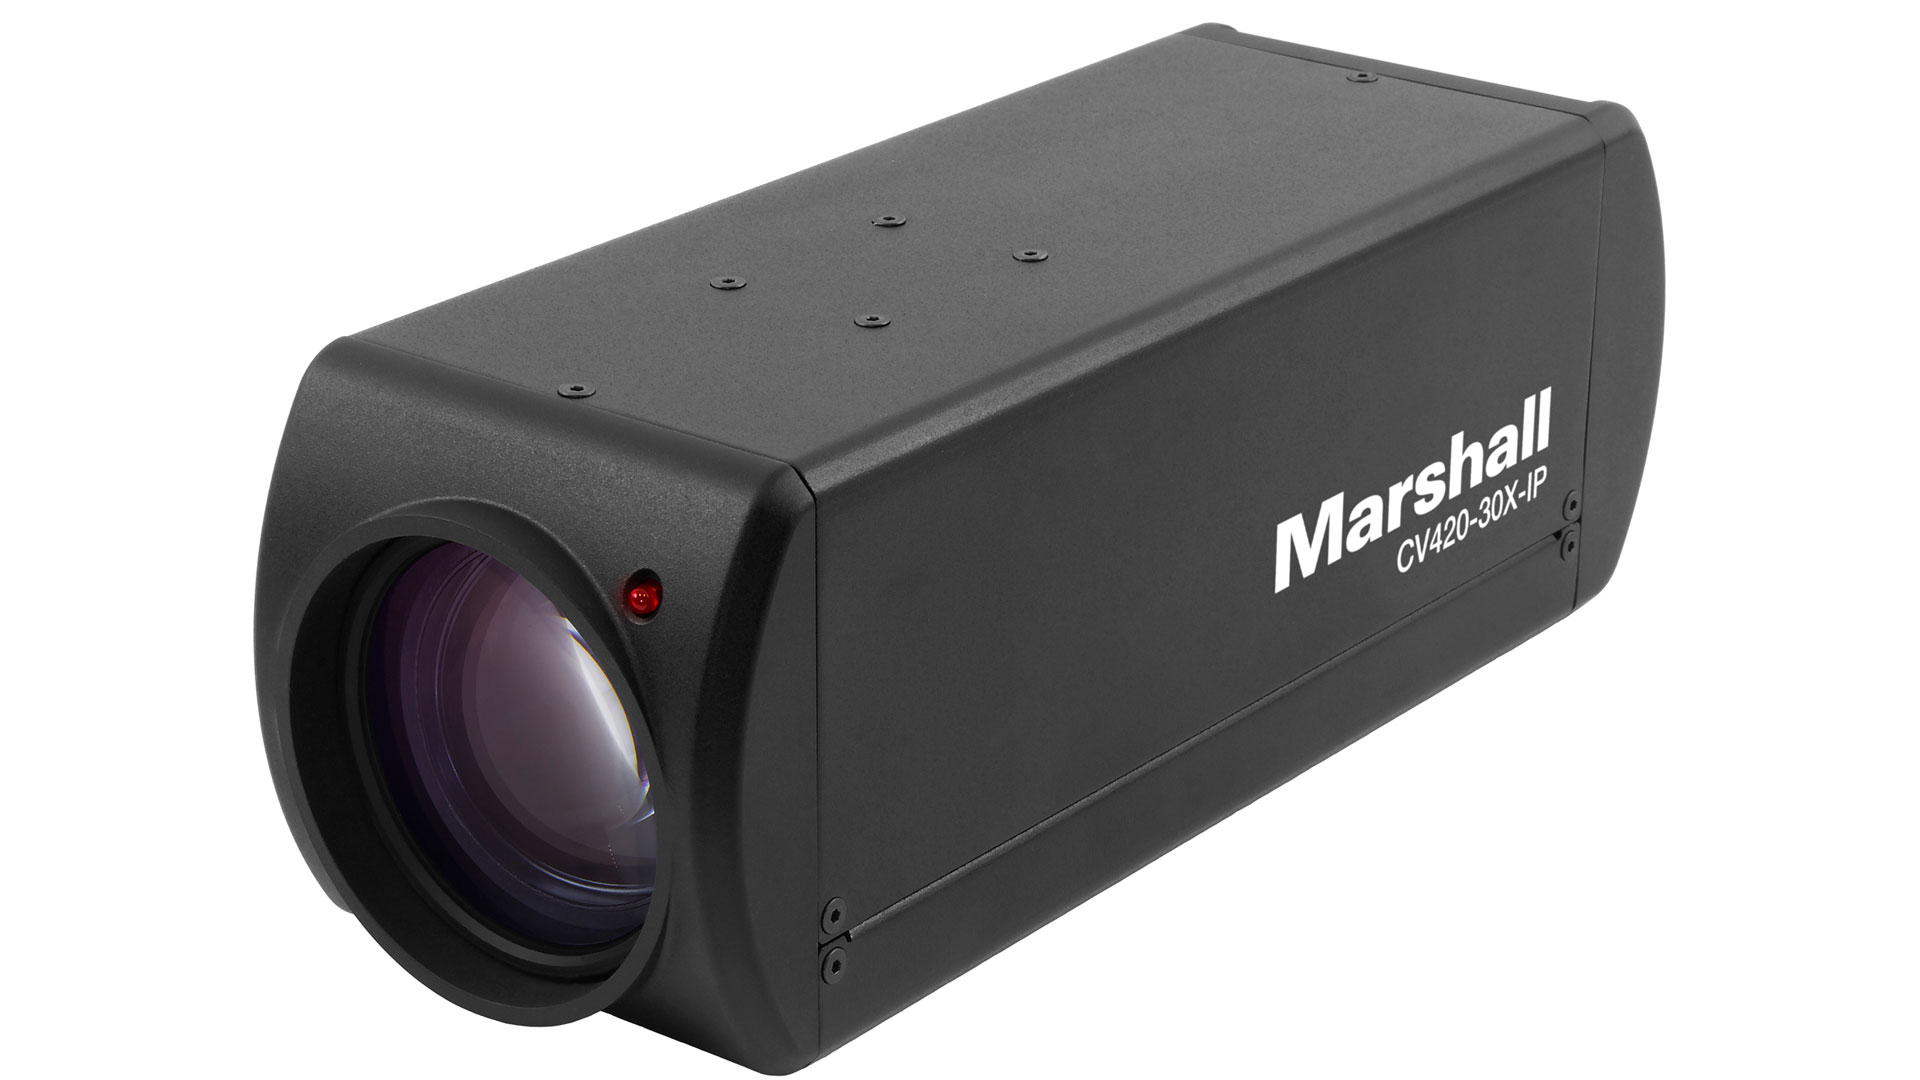 Marshall CV420-30X-IP camera